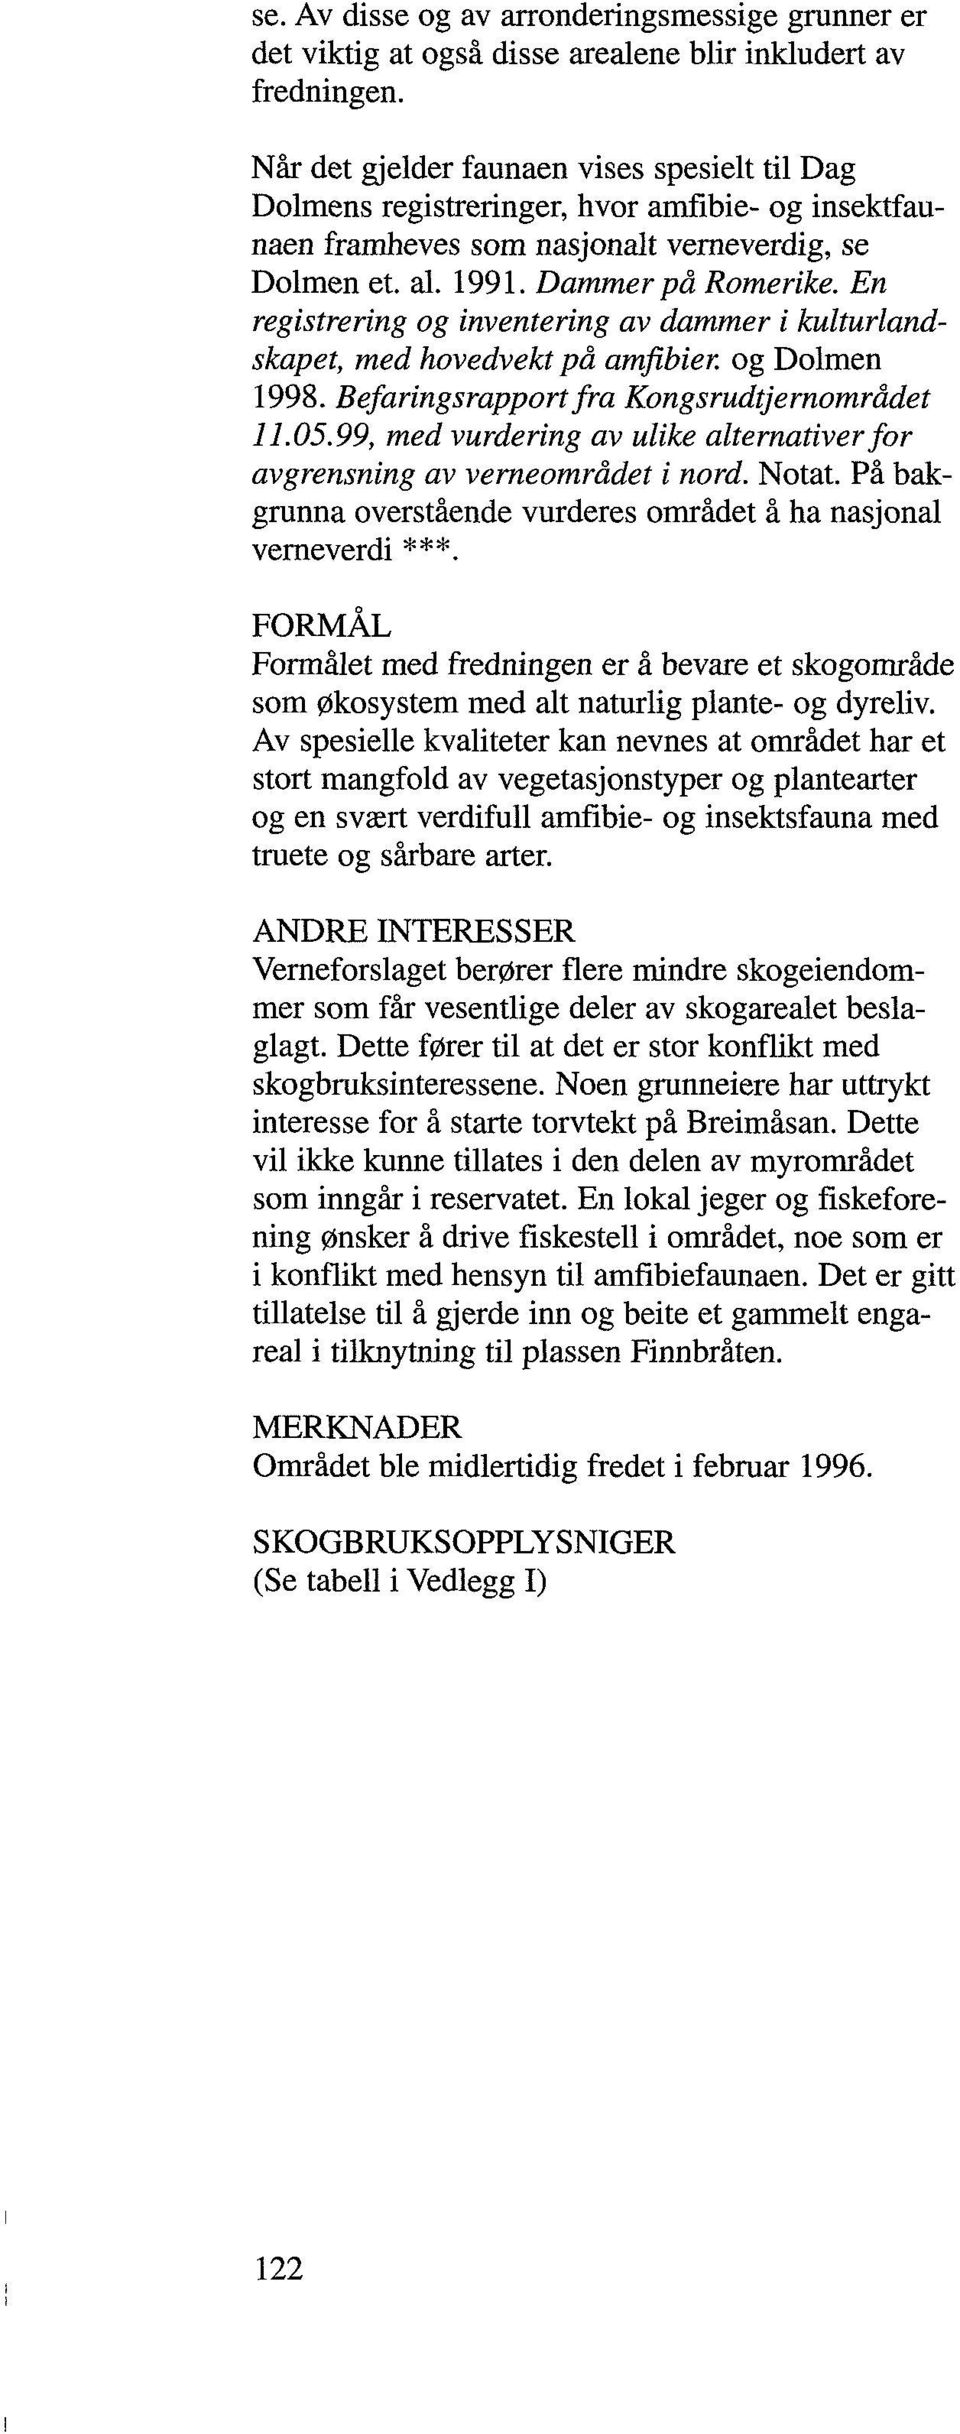 En registrering og inventering av dammer i kulturlandskapet, med hovedvekt på amfibier, og Dolmen 1998. Befaringsrapport fra Kongsrudtjernområdet 11.05.